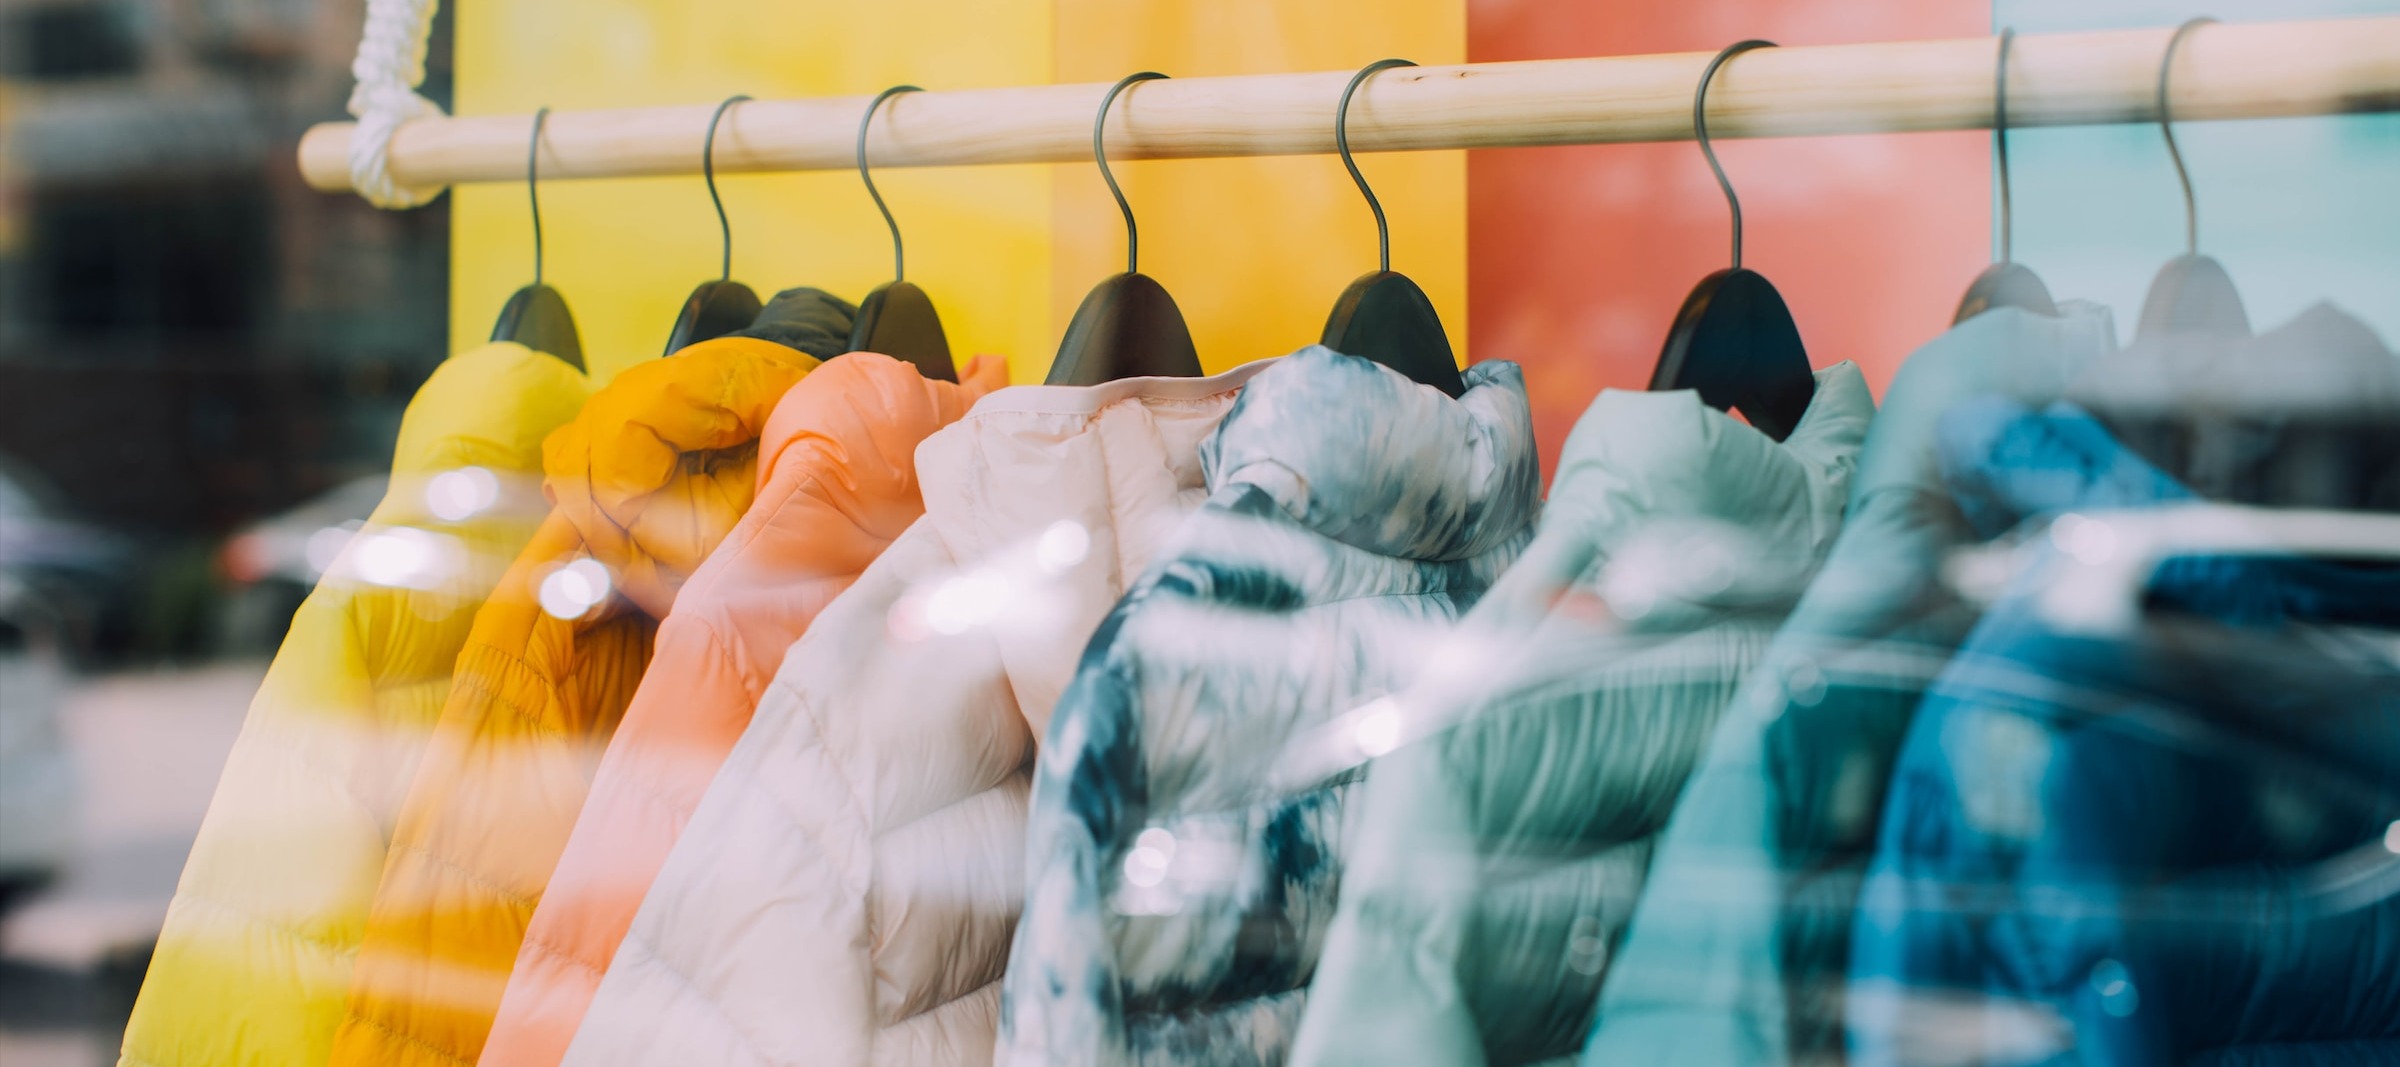 Фото новости: "«Яков и партнеры»: российский рынок одежды может сократиться на 15% к 2028 г."